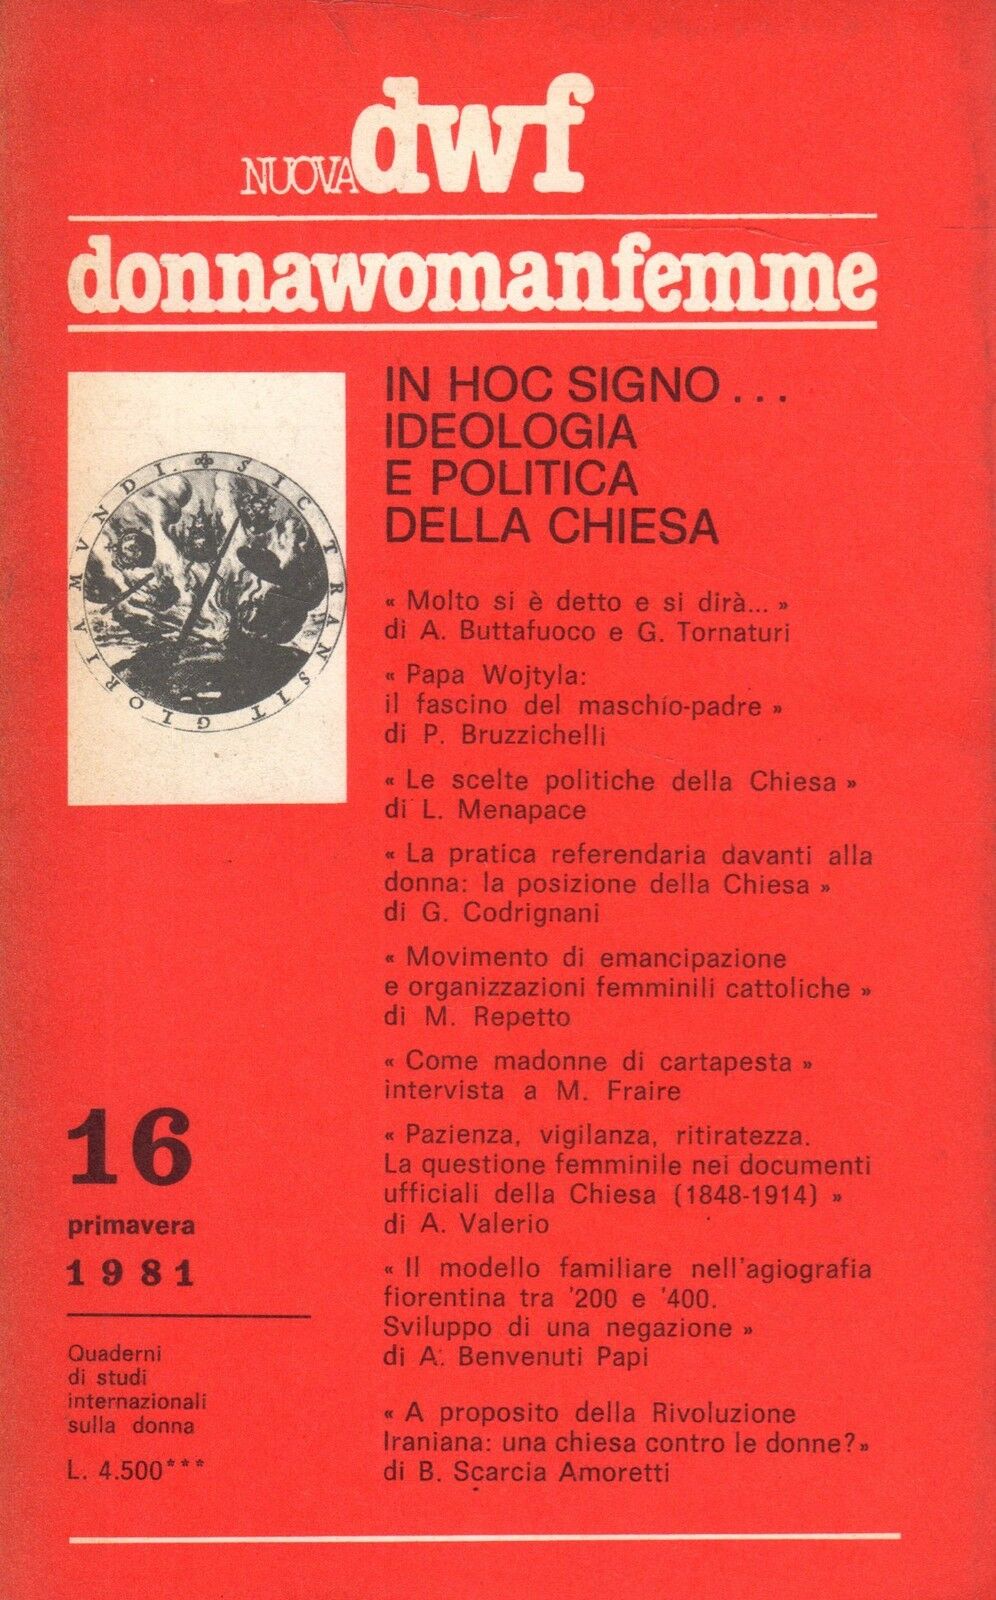 IN HOC SIGNO… Ideologia e politica della Chiesa, Nuova DWF (16) 1981